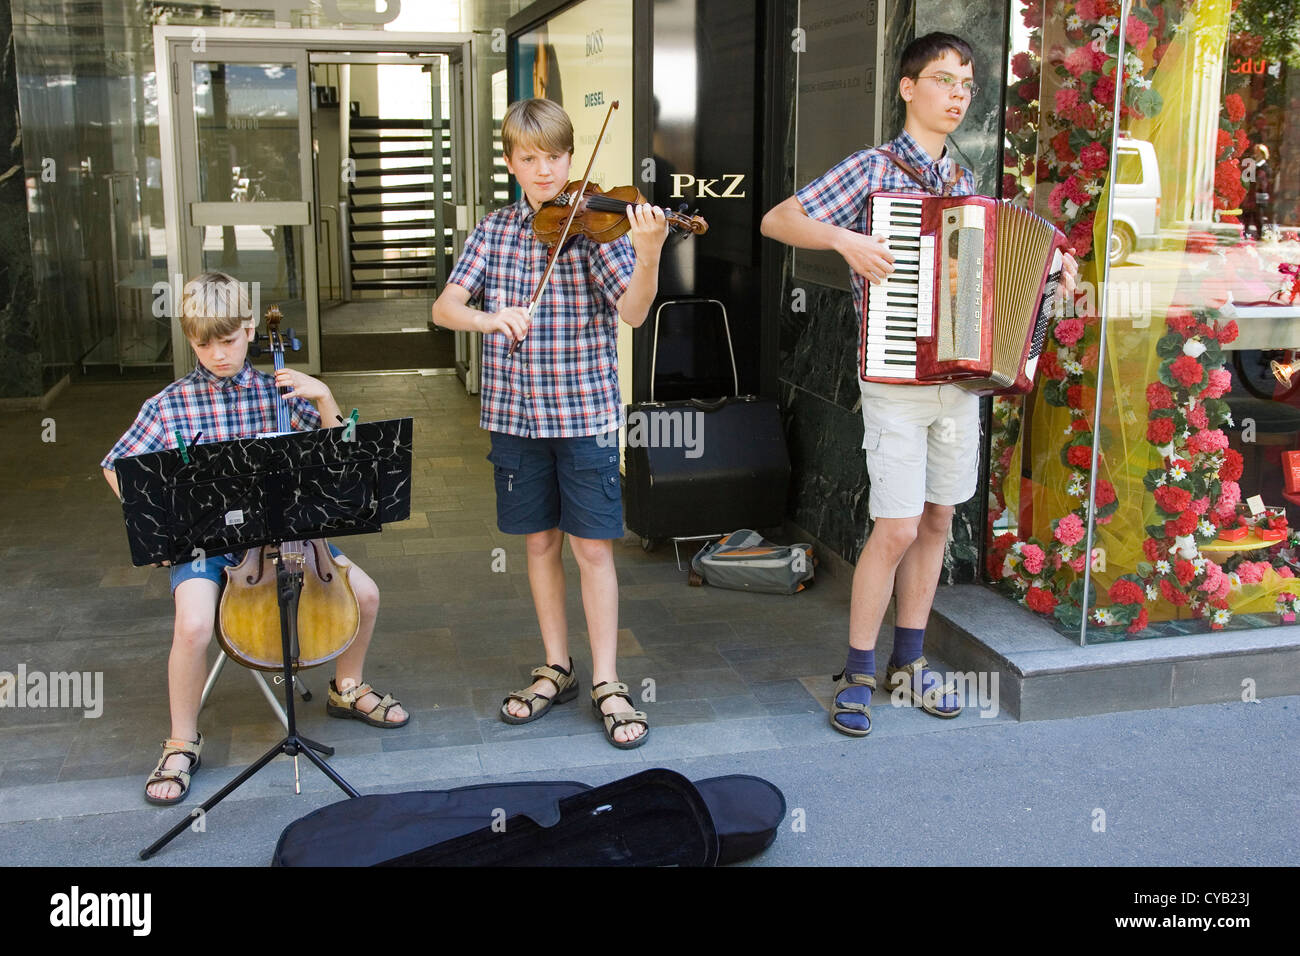 L'Europe, Suisse, Zurich, les garçons jouent de la musique le long de la Bahnhofstrasse Banque D'Images